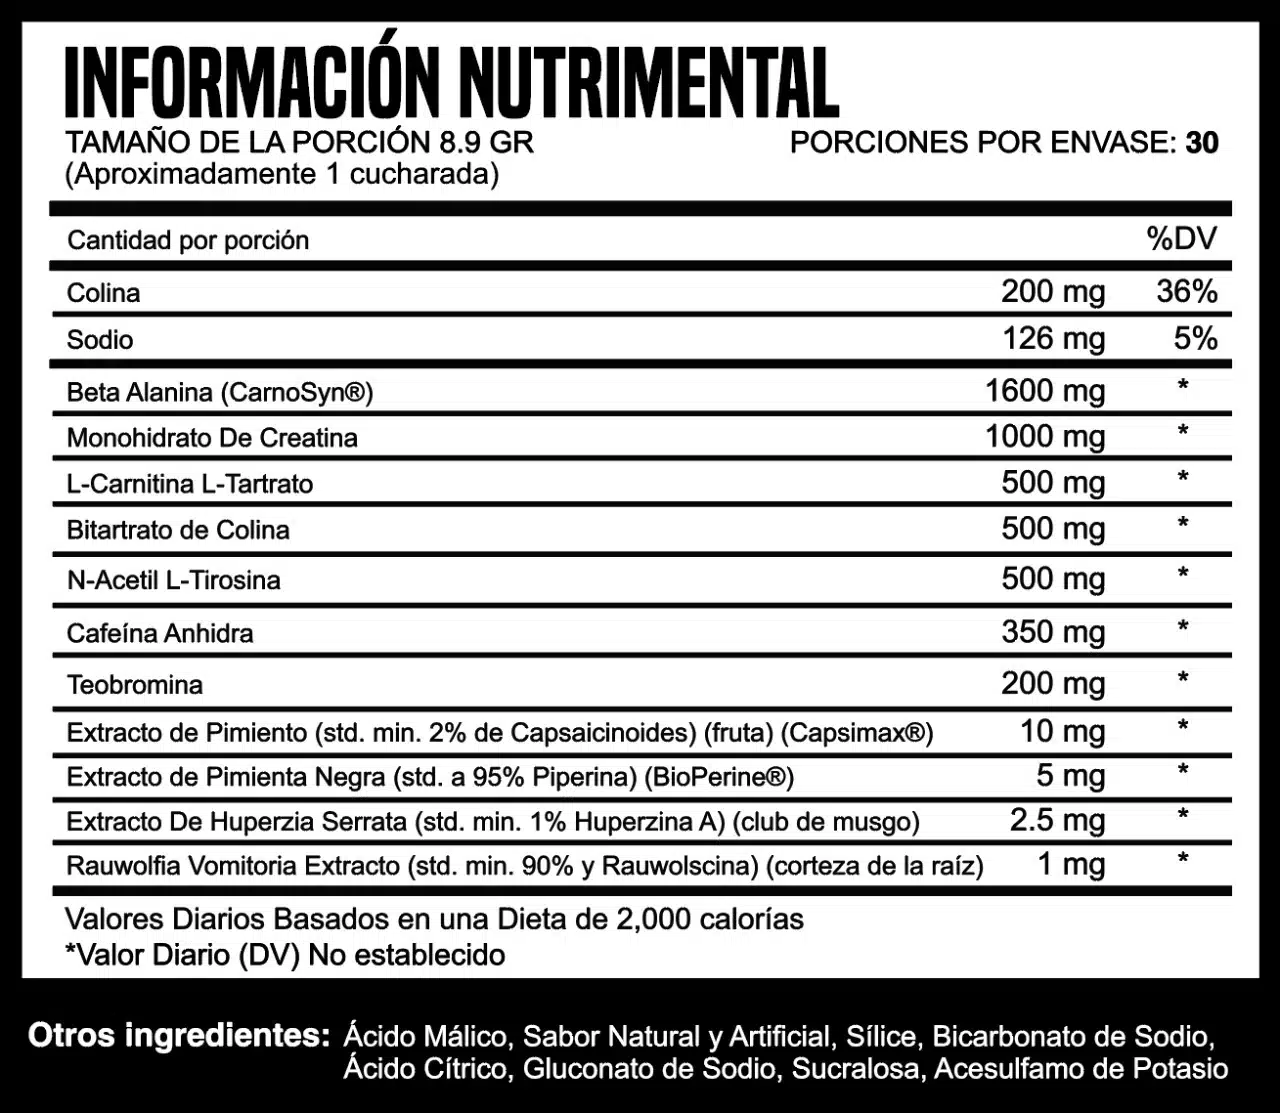 Resiliencia Pro Oxido Nitrico by Fernando Valdez ingredientes